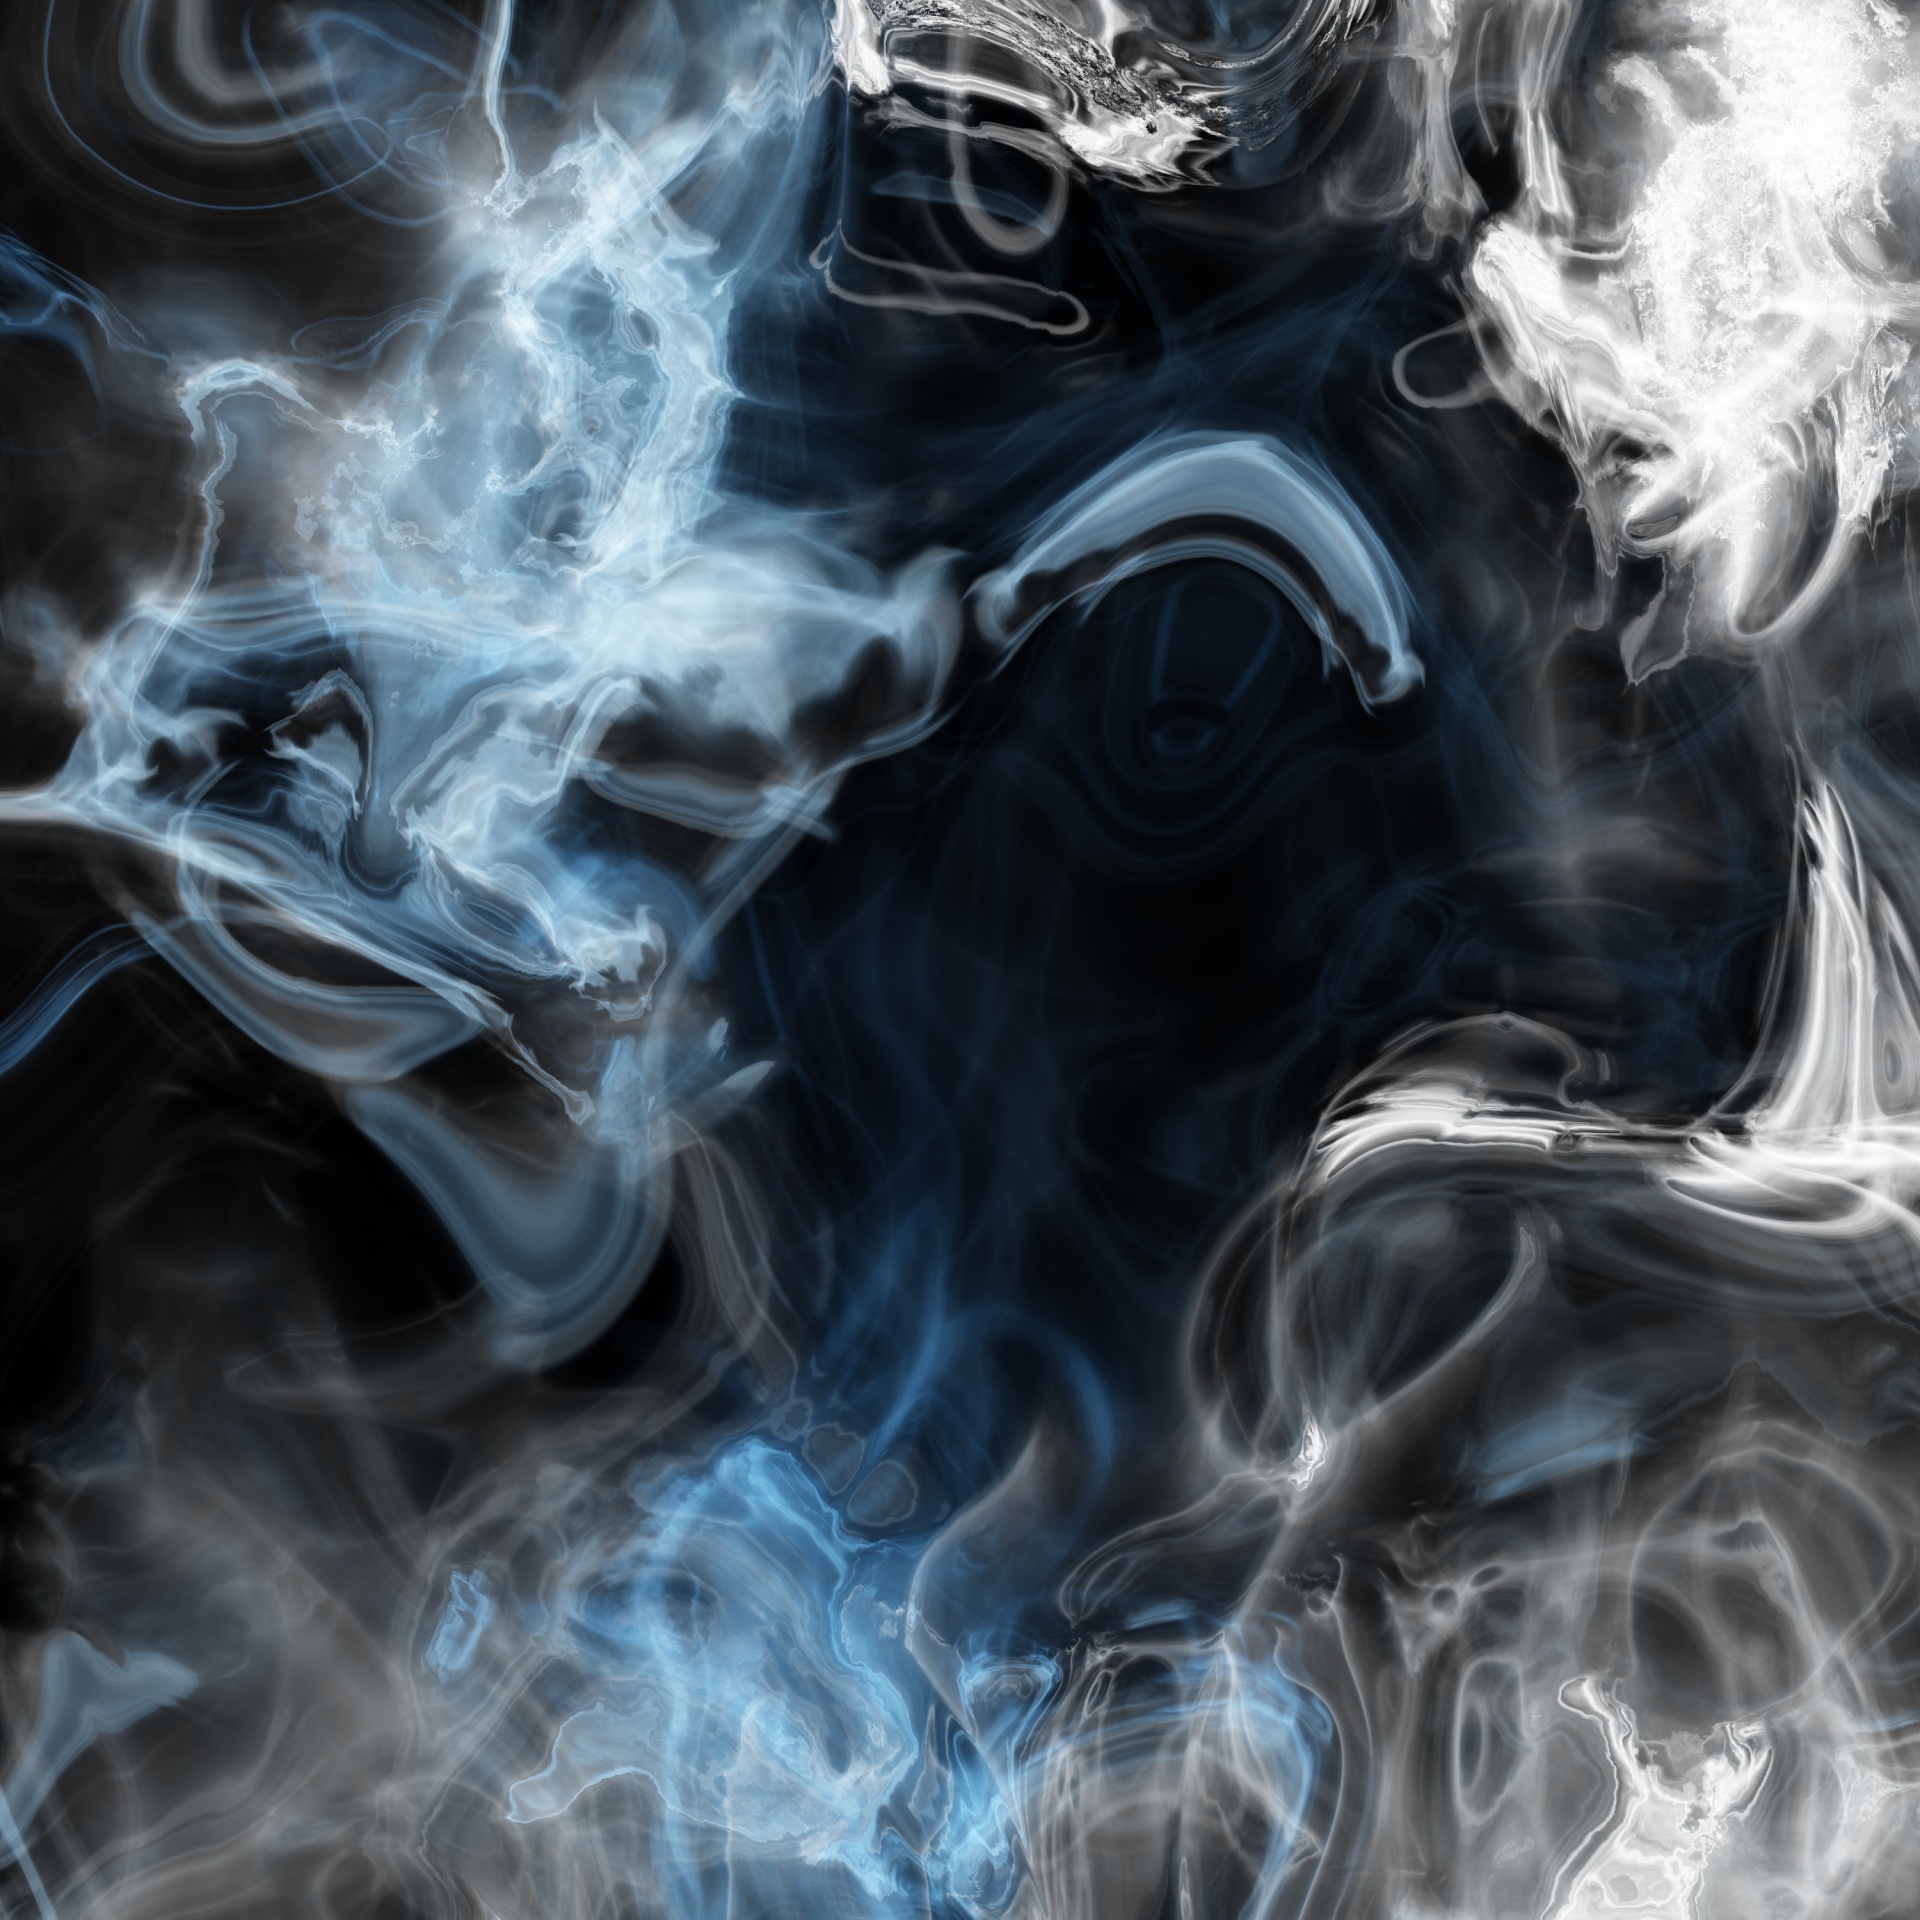 Tìm hiểu 120 hình nền khói tuyệt vời nhất  thdonghoadian